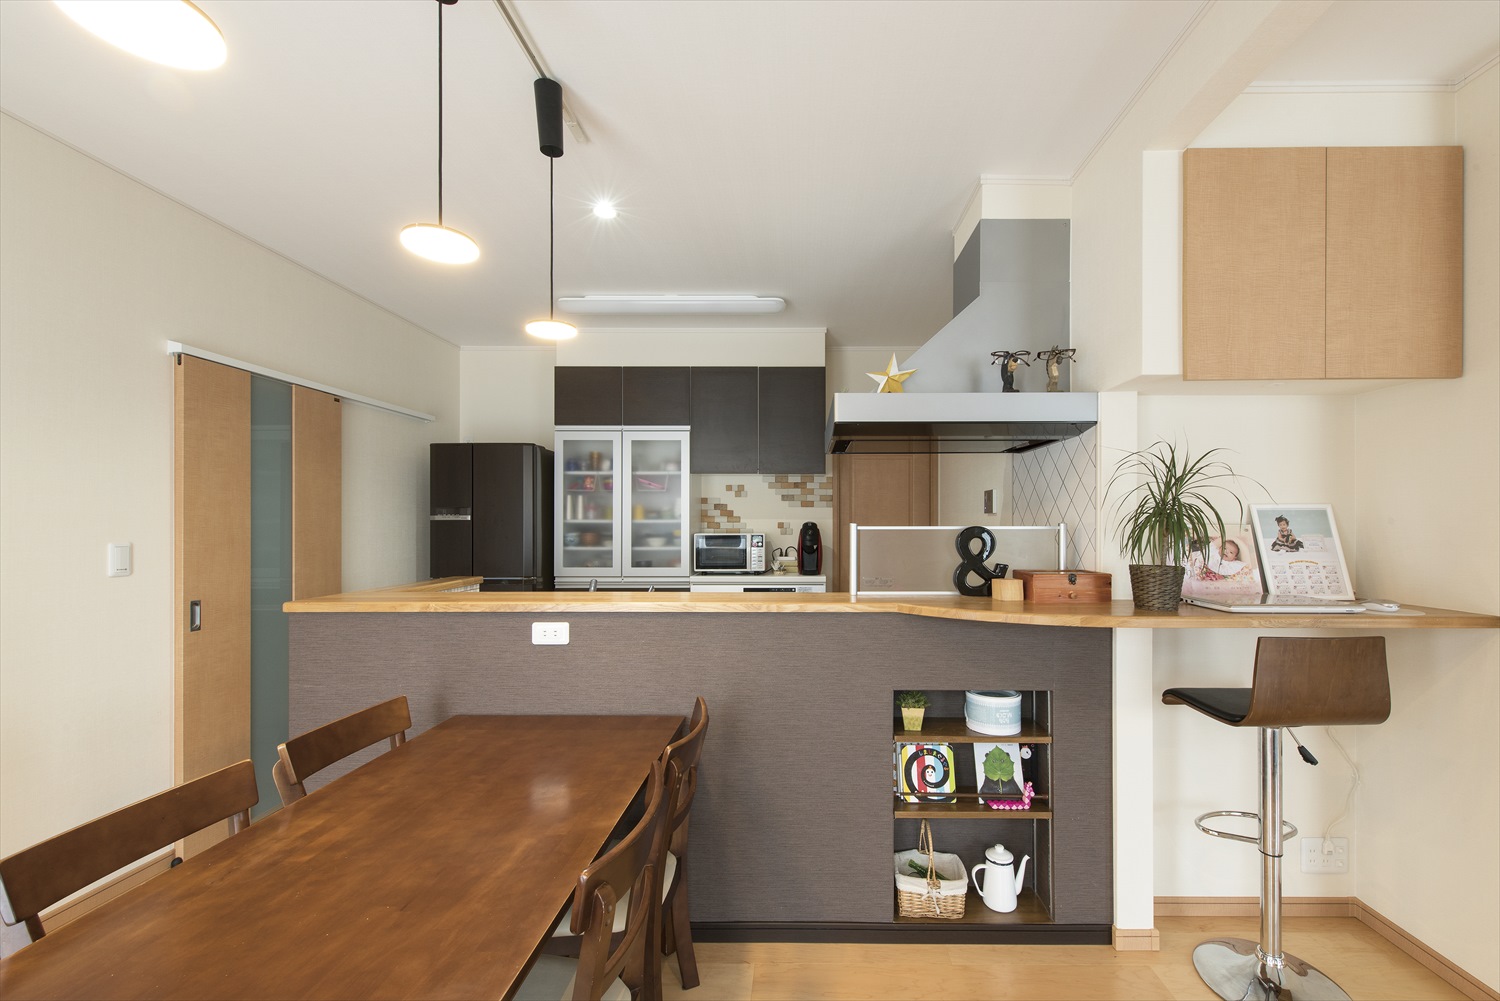 キッチン腰壁でつくるモダンな収納 デザイン術 対面キッチンの便利でおしゃれなアイデア設計 実例 不二建設